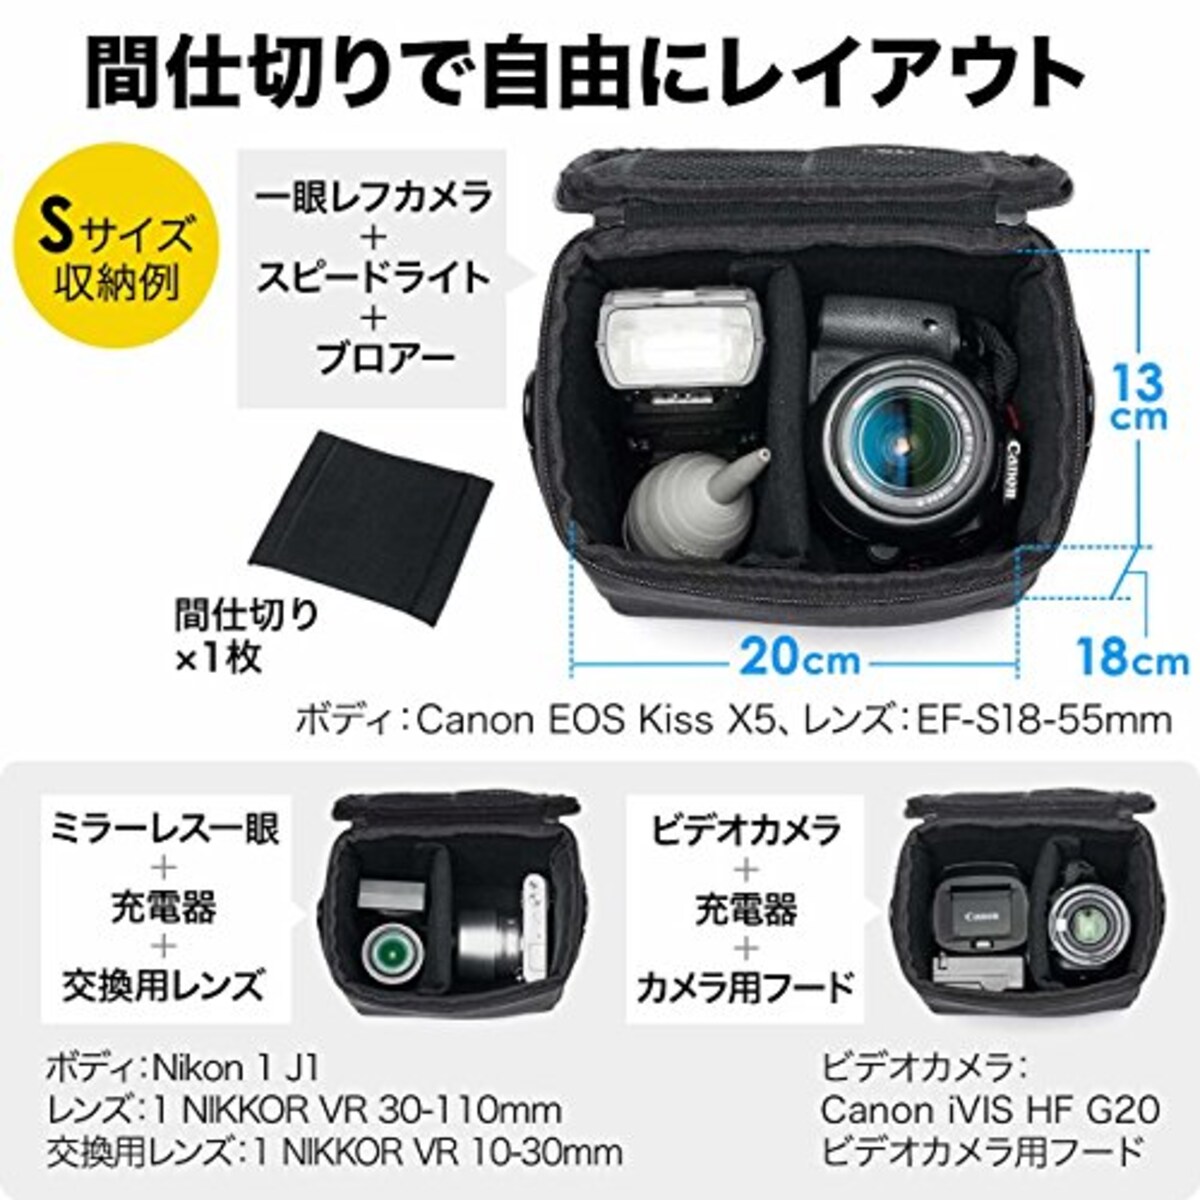  サンワダイレクト カメラバッグ インナーバッグ ショルダーベルト付 ミラーレス 一眼レフ ビデオ対応 Sサイズ 200-DGBG010画像4 